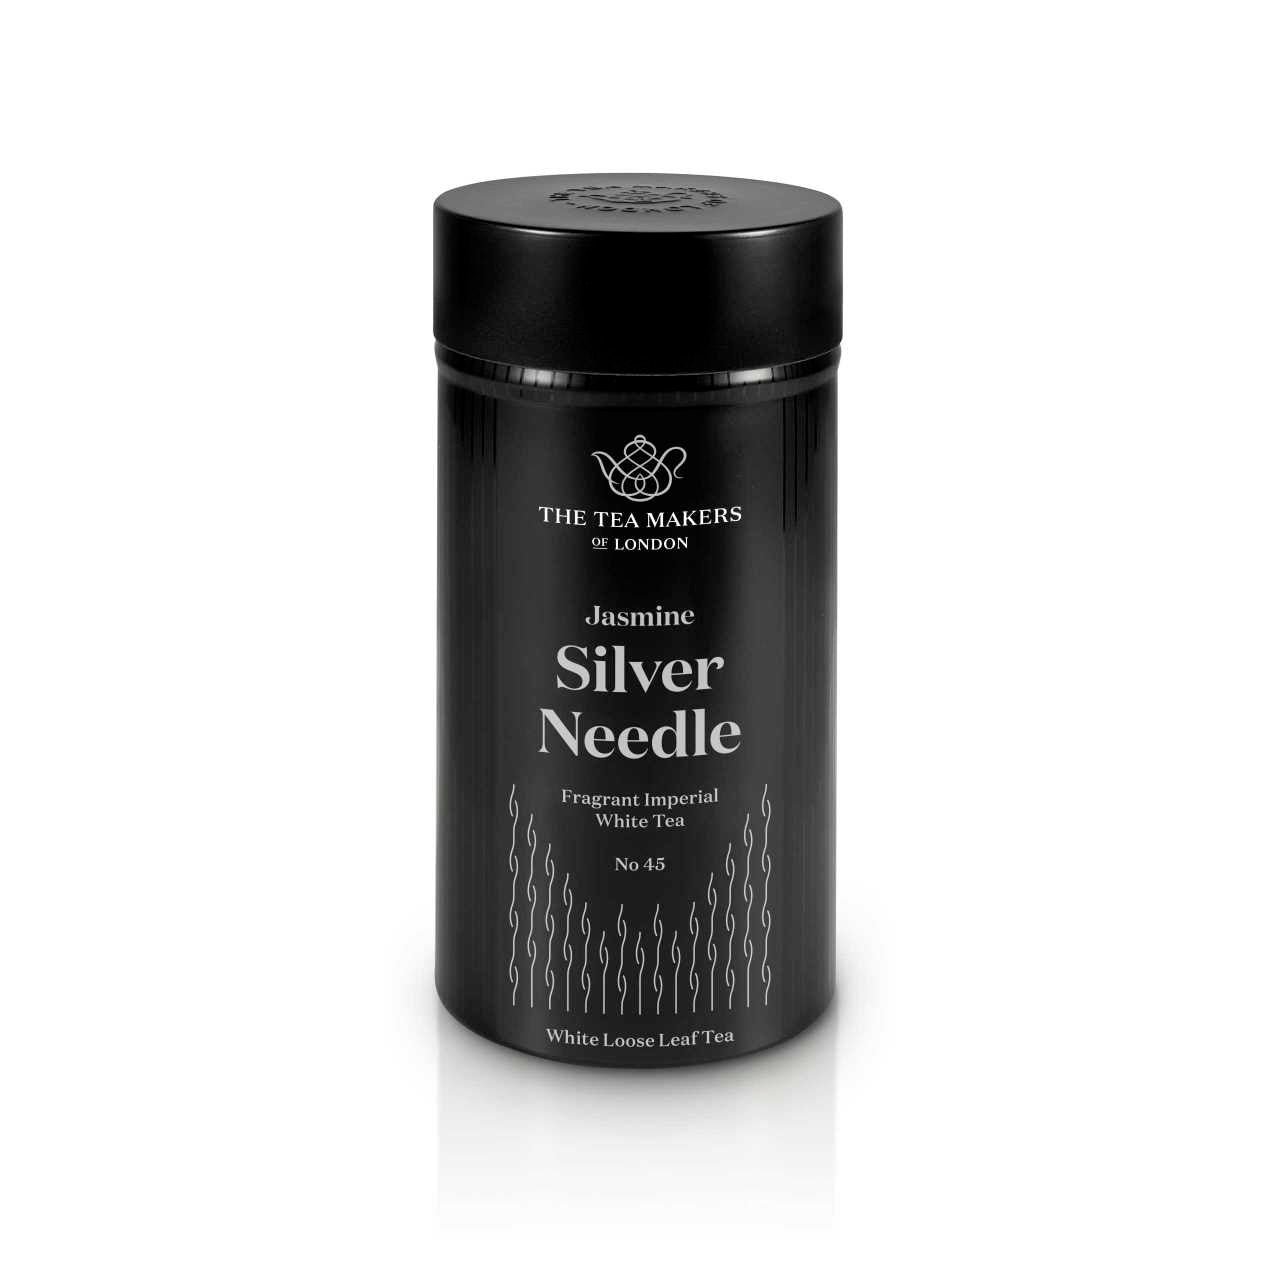 Jasmine Silver Needle Loose Leaf tea Caddy